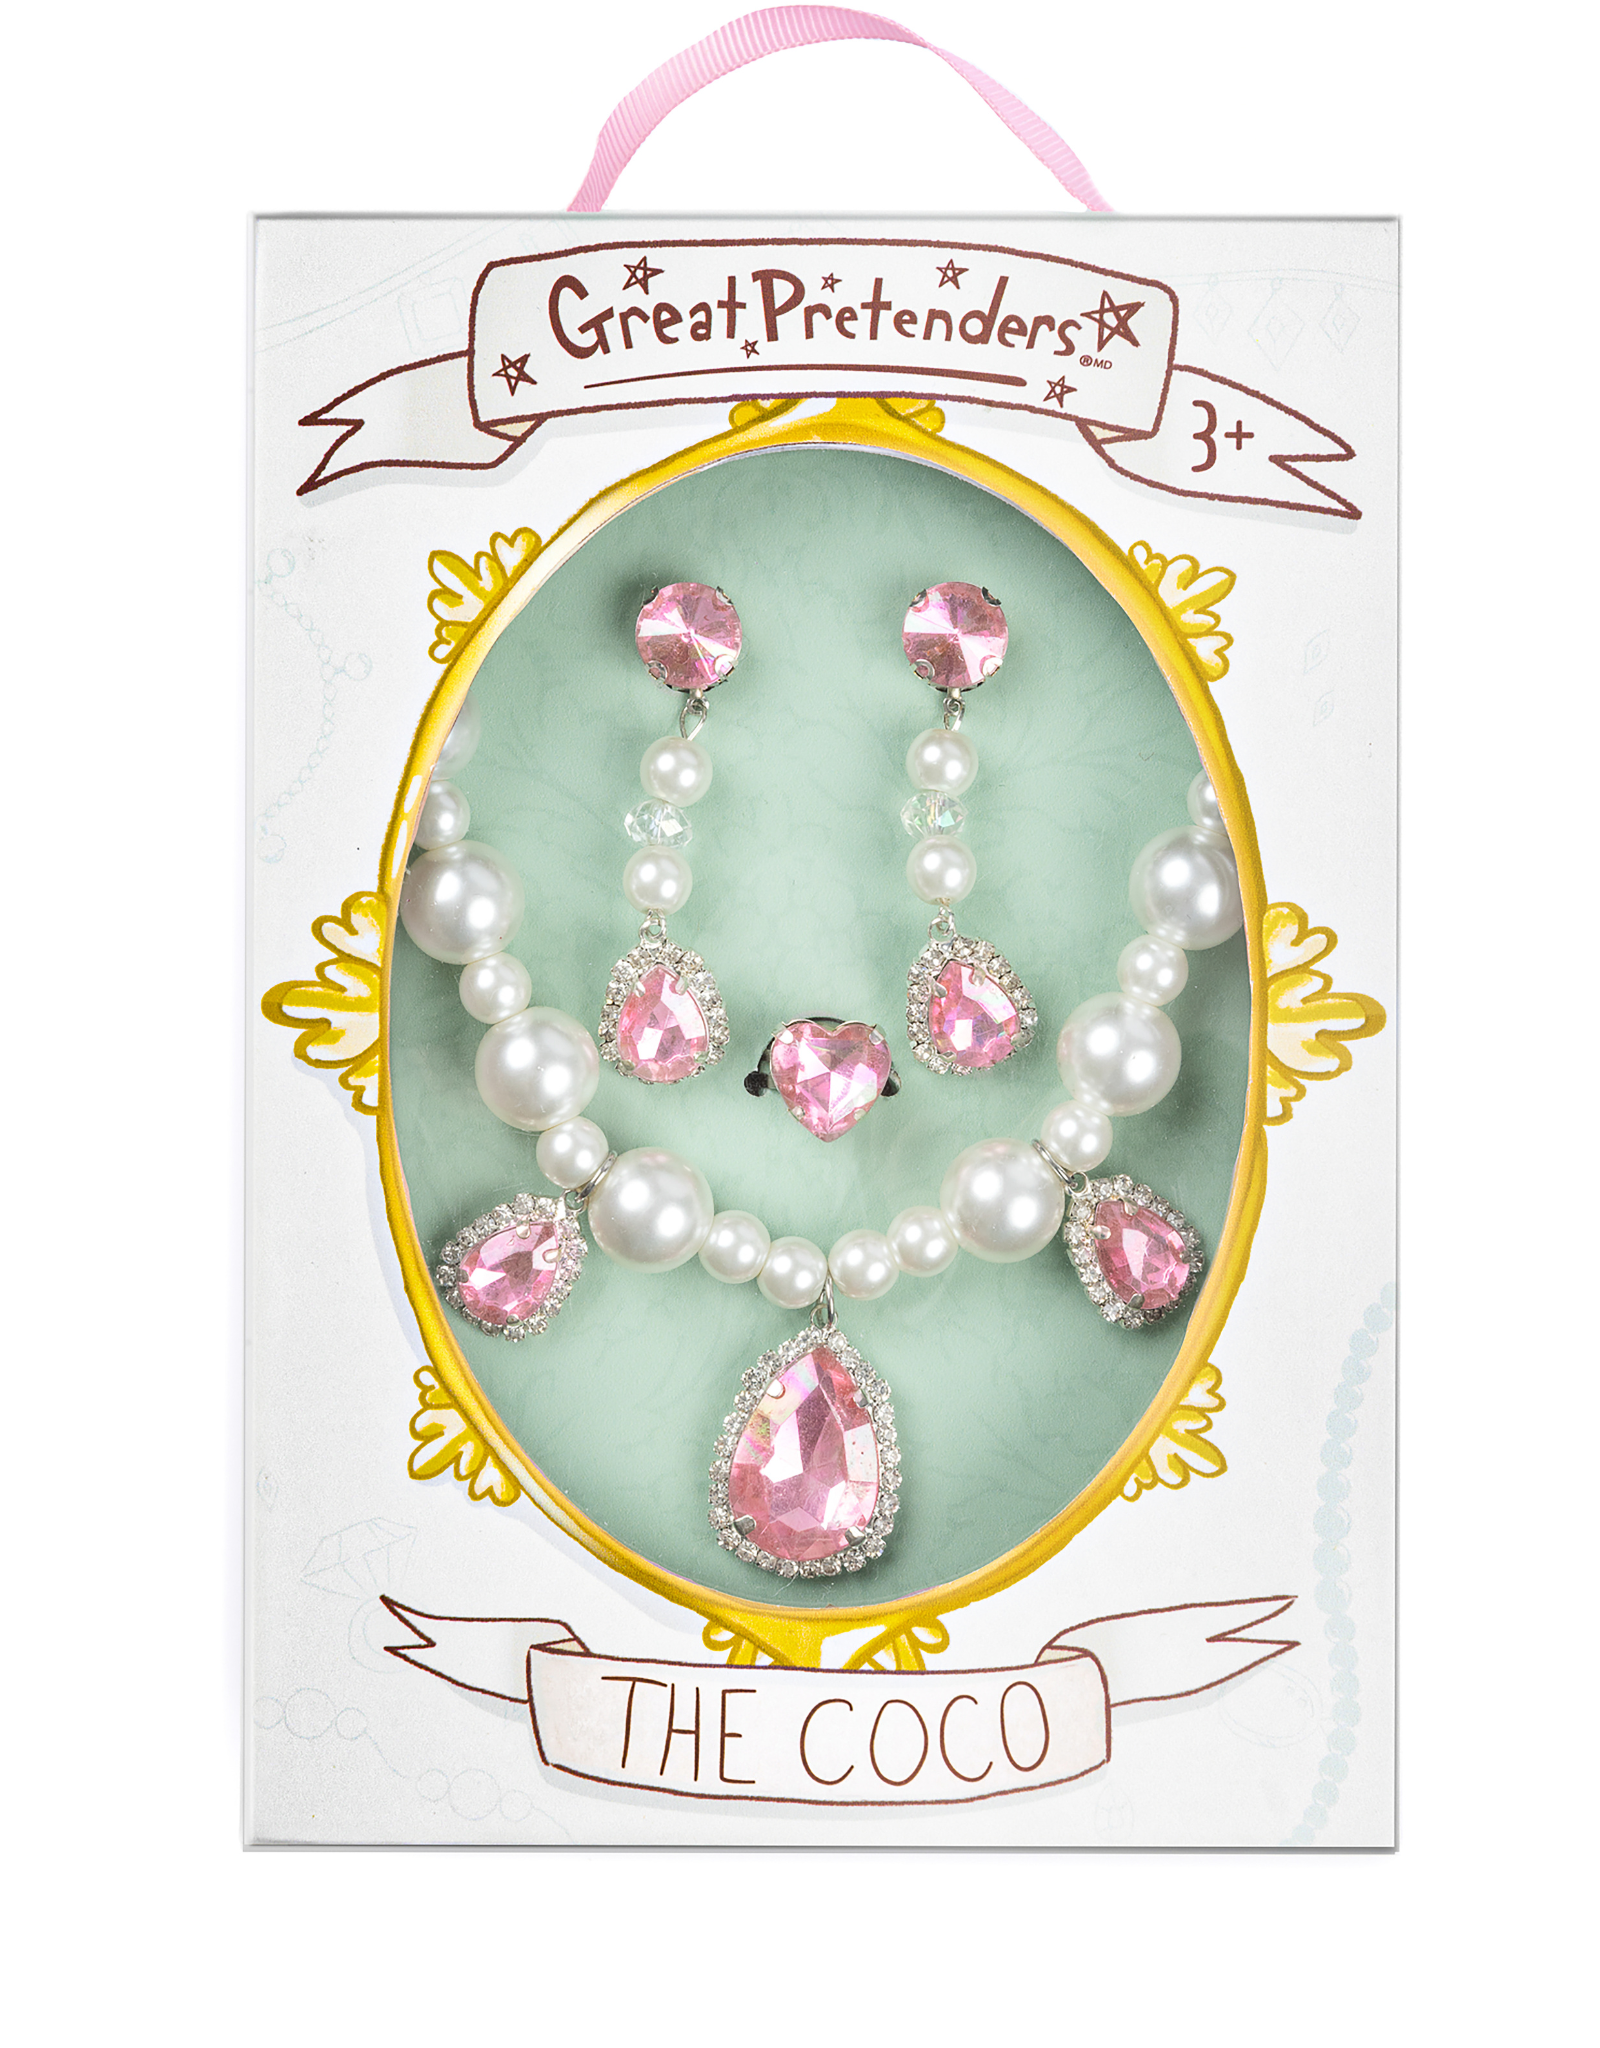 GreatPretenders 85013 The Coco 4 pc Jewelry Set